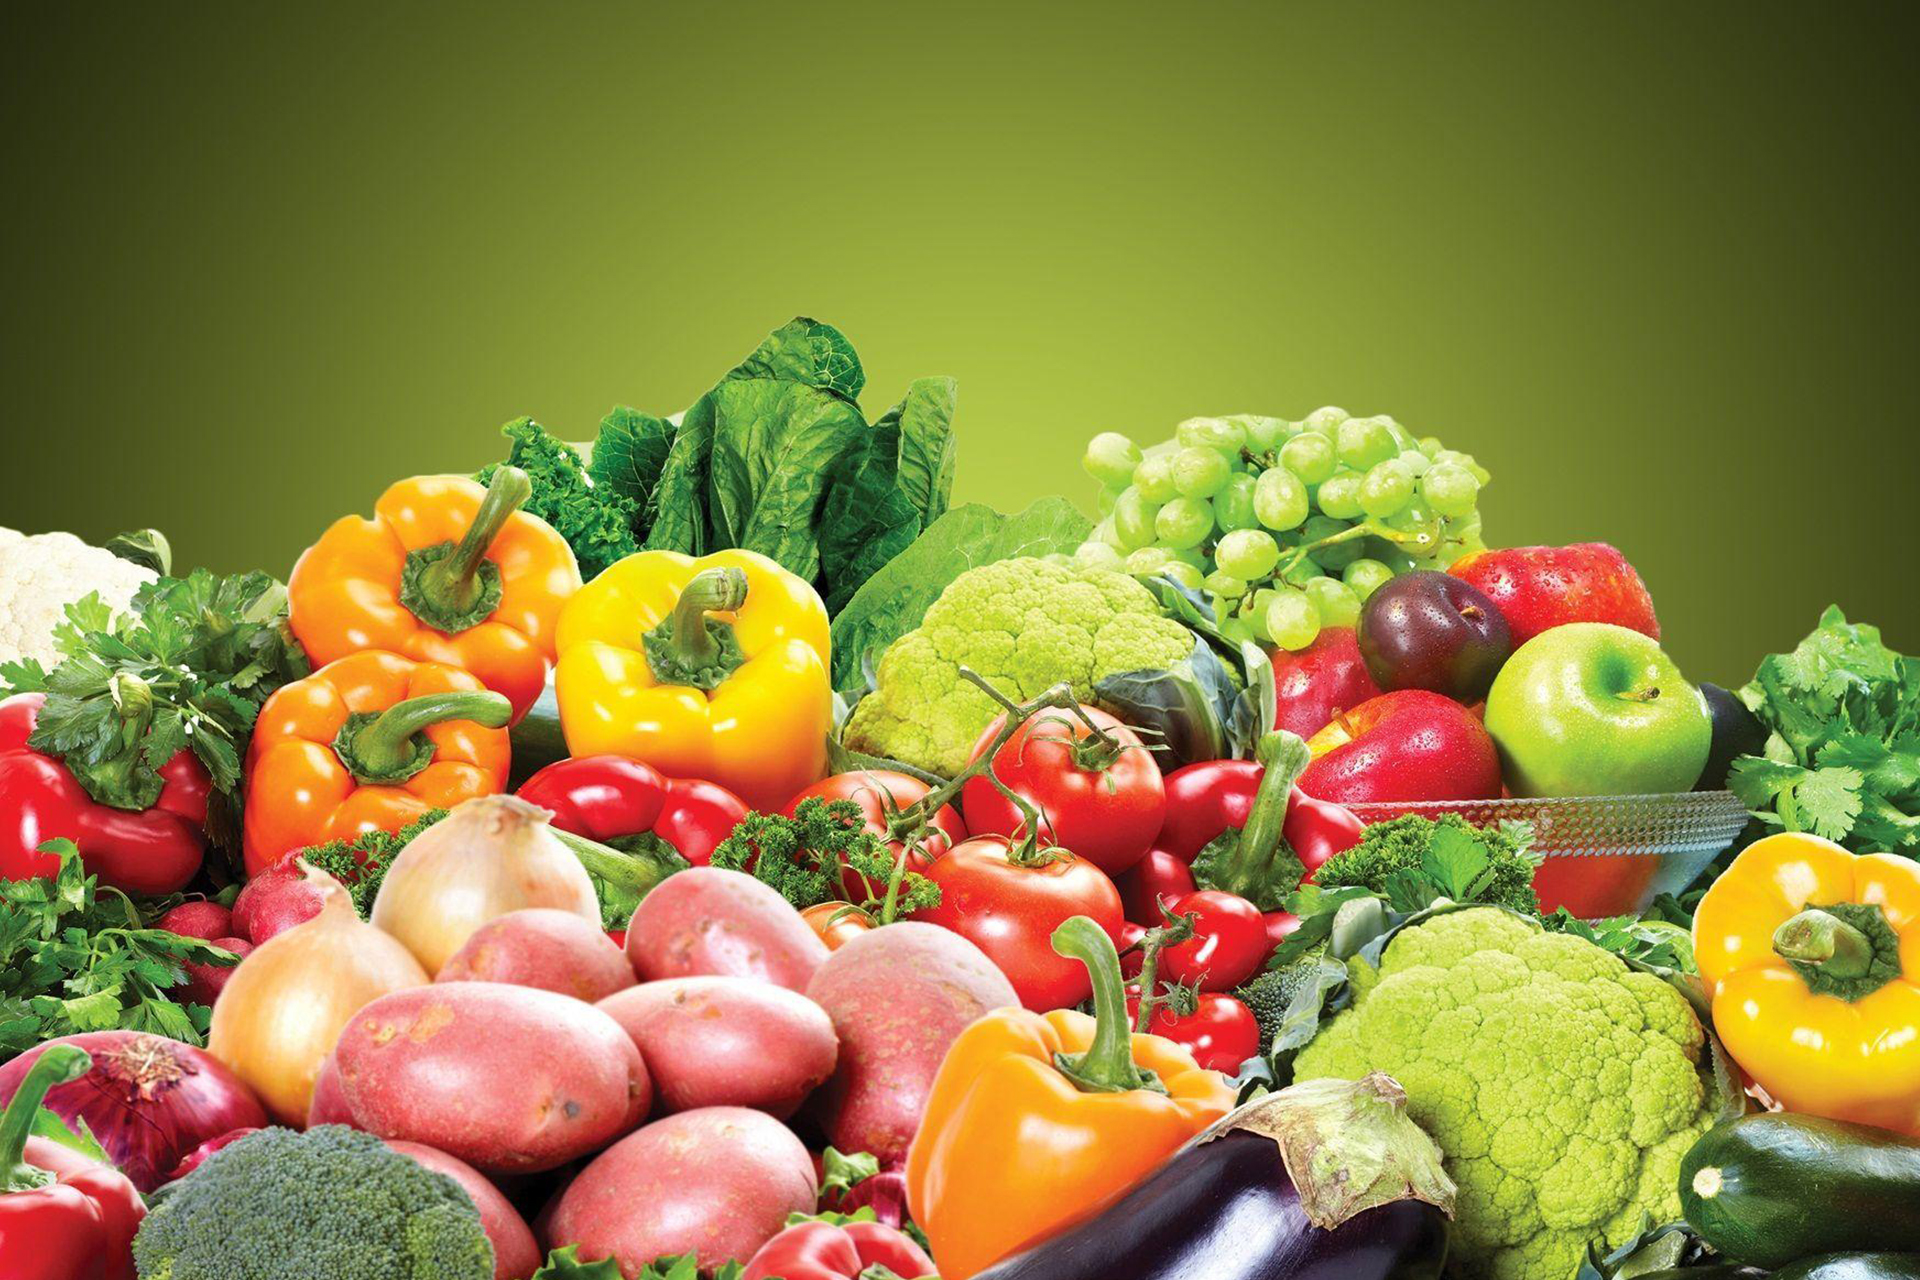 Vegetable products. Овощи и фрукты. Красивые овощи. Свежие овощи и фрукты. Сочные овощи.